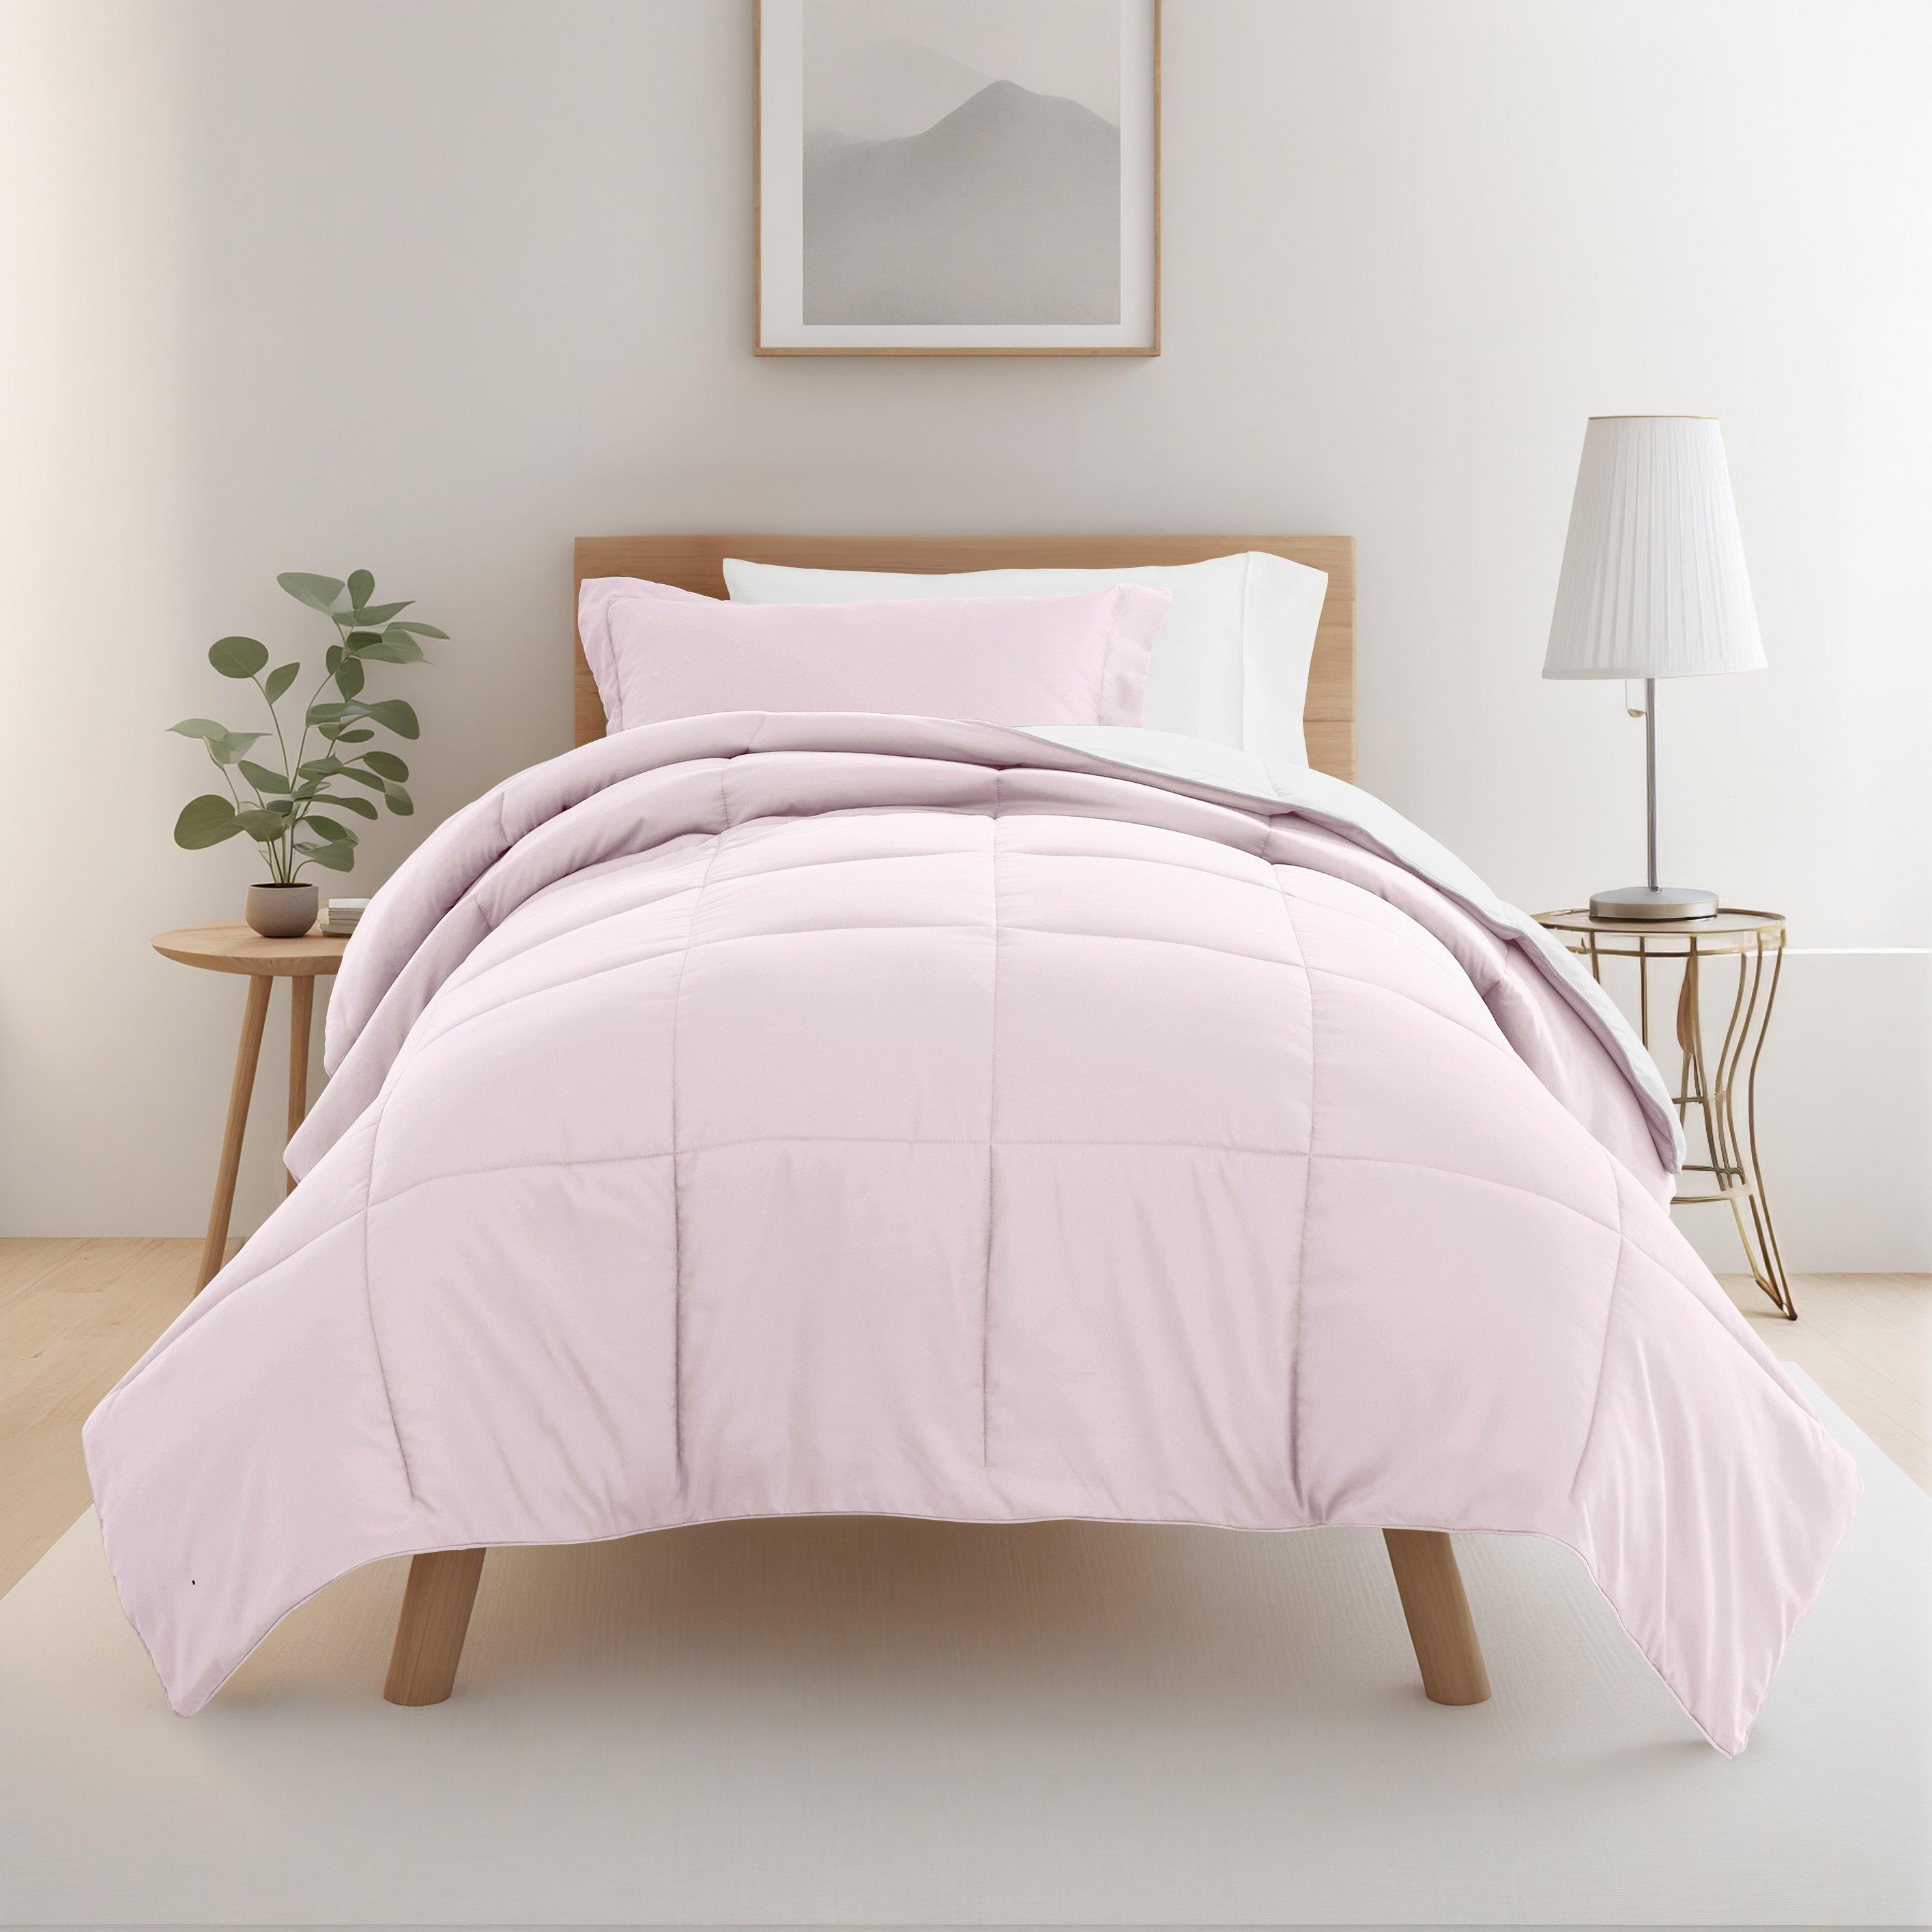 IENJOY HOME 8 Piece Solid Comforter Dorm Set Bundle